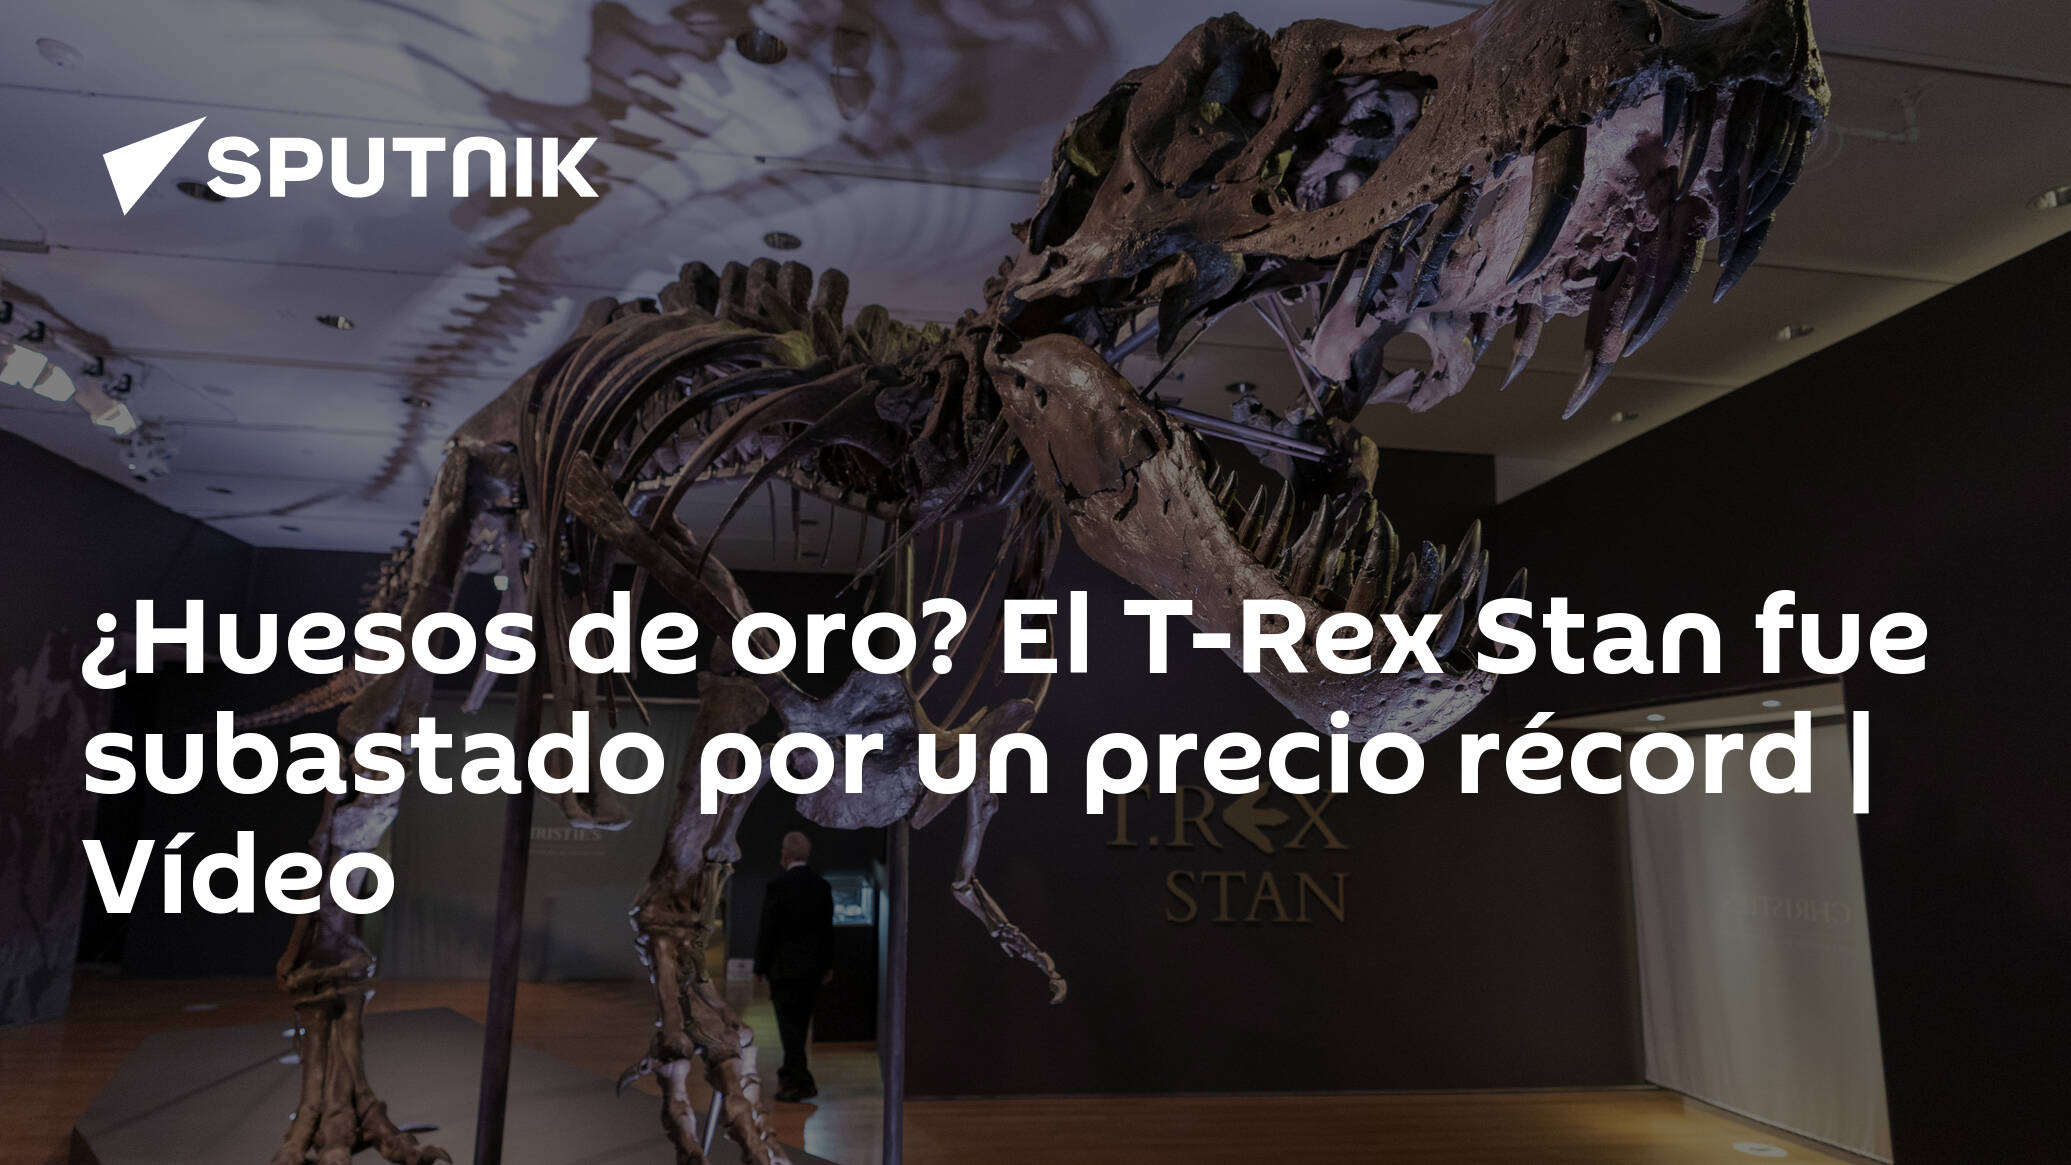 Huesos de oro? El T-Rex Stan fue subastado por un precio récord | Vídeo -  , Sputnik Mundo